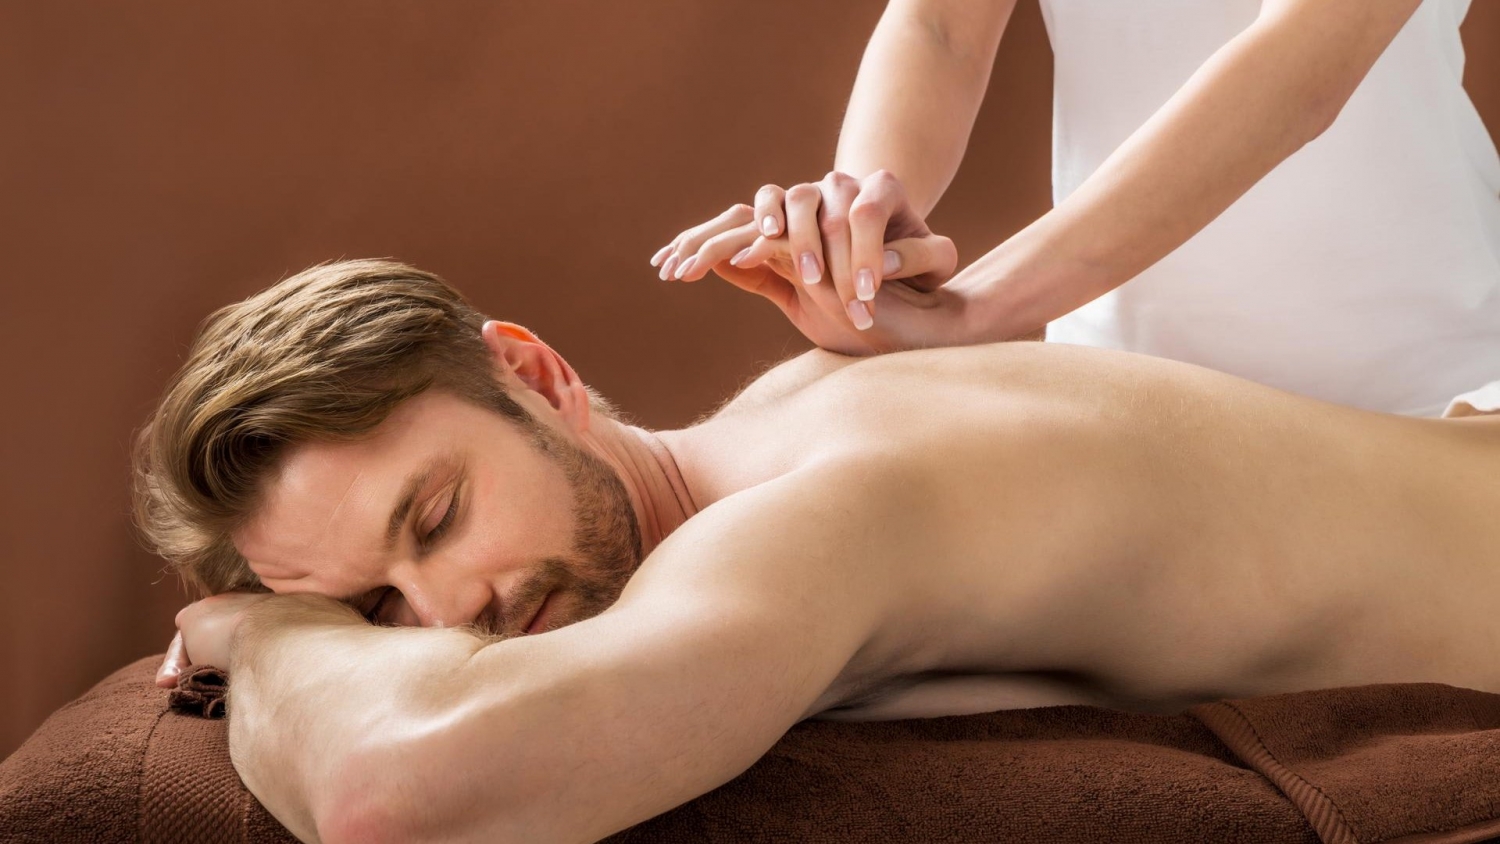 Vad betyder grekisk massage?